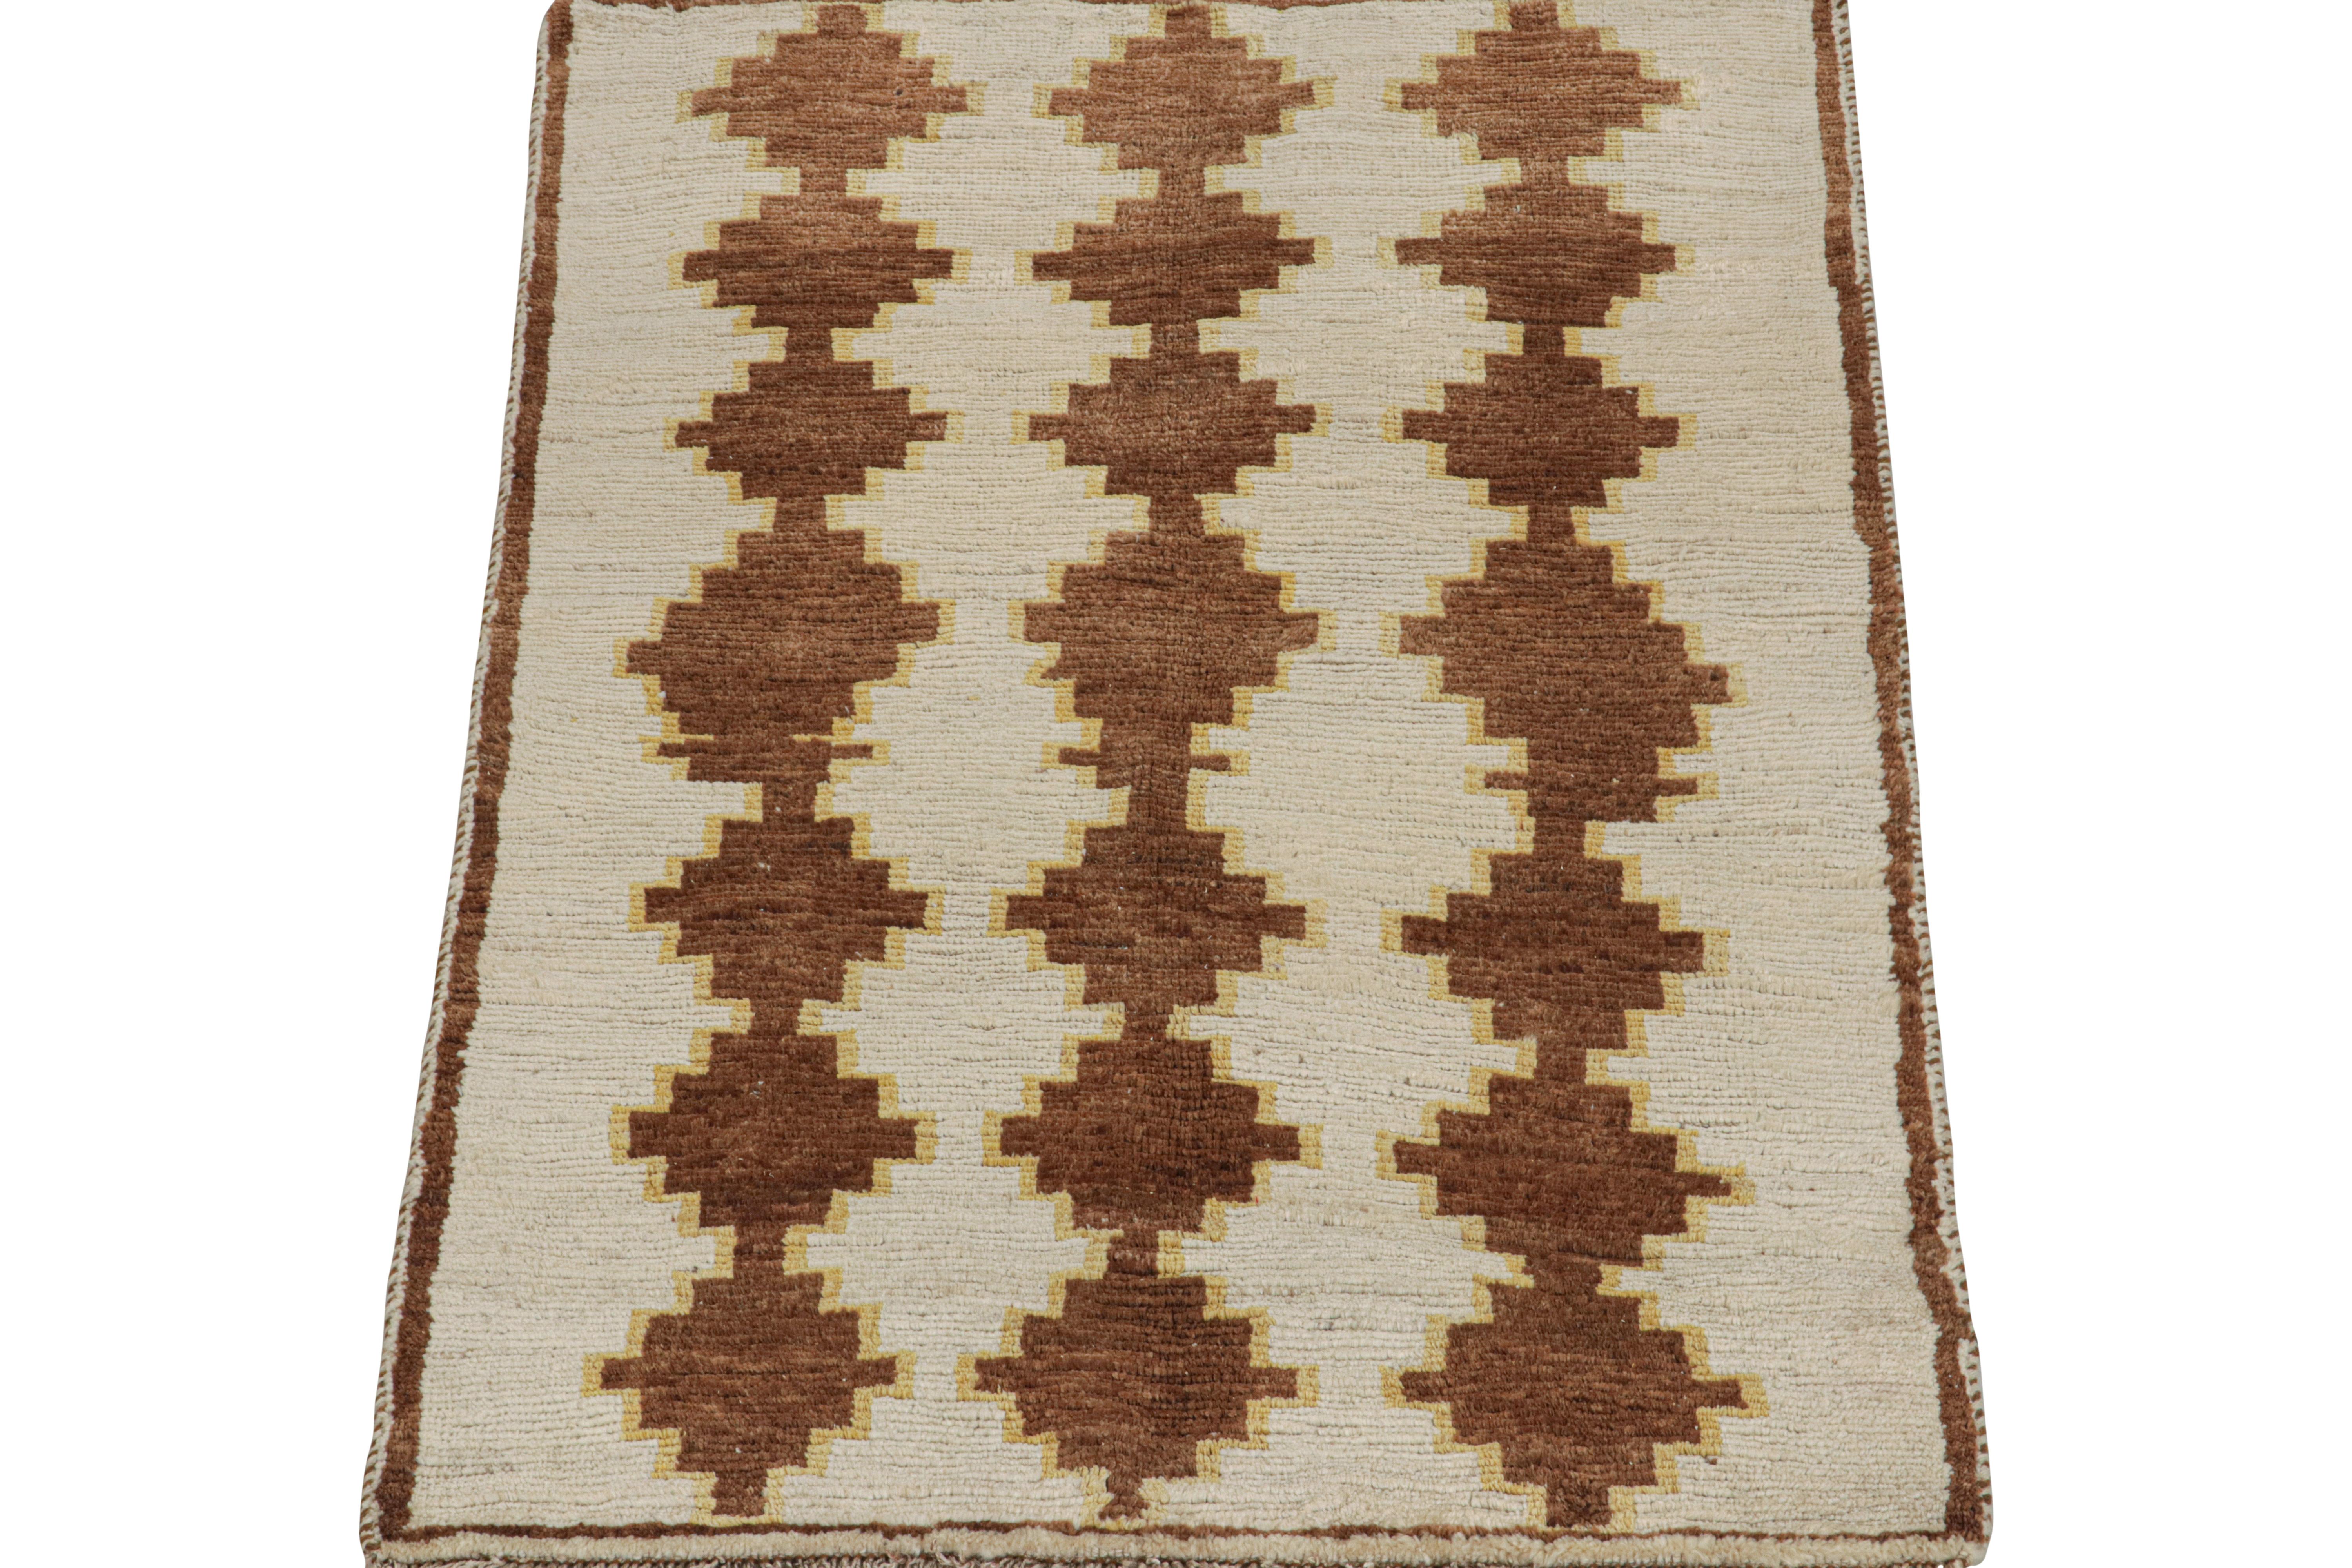 Dieser alte 4x6 Perserteppich ist ein Gabbeh-Teppich, der vom Stamm der Gaschgai stammt und um 1950-1960 aus Wolle handgeknüpft wurde.

Sein geometrisches Muster ist ein Spiel aus beigen und braunen geometrischen Mustern mit feinen gelben